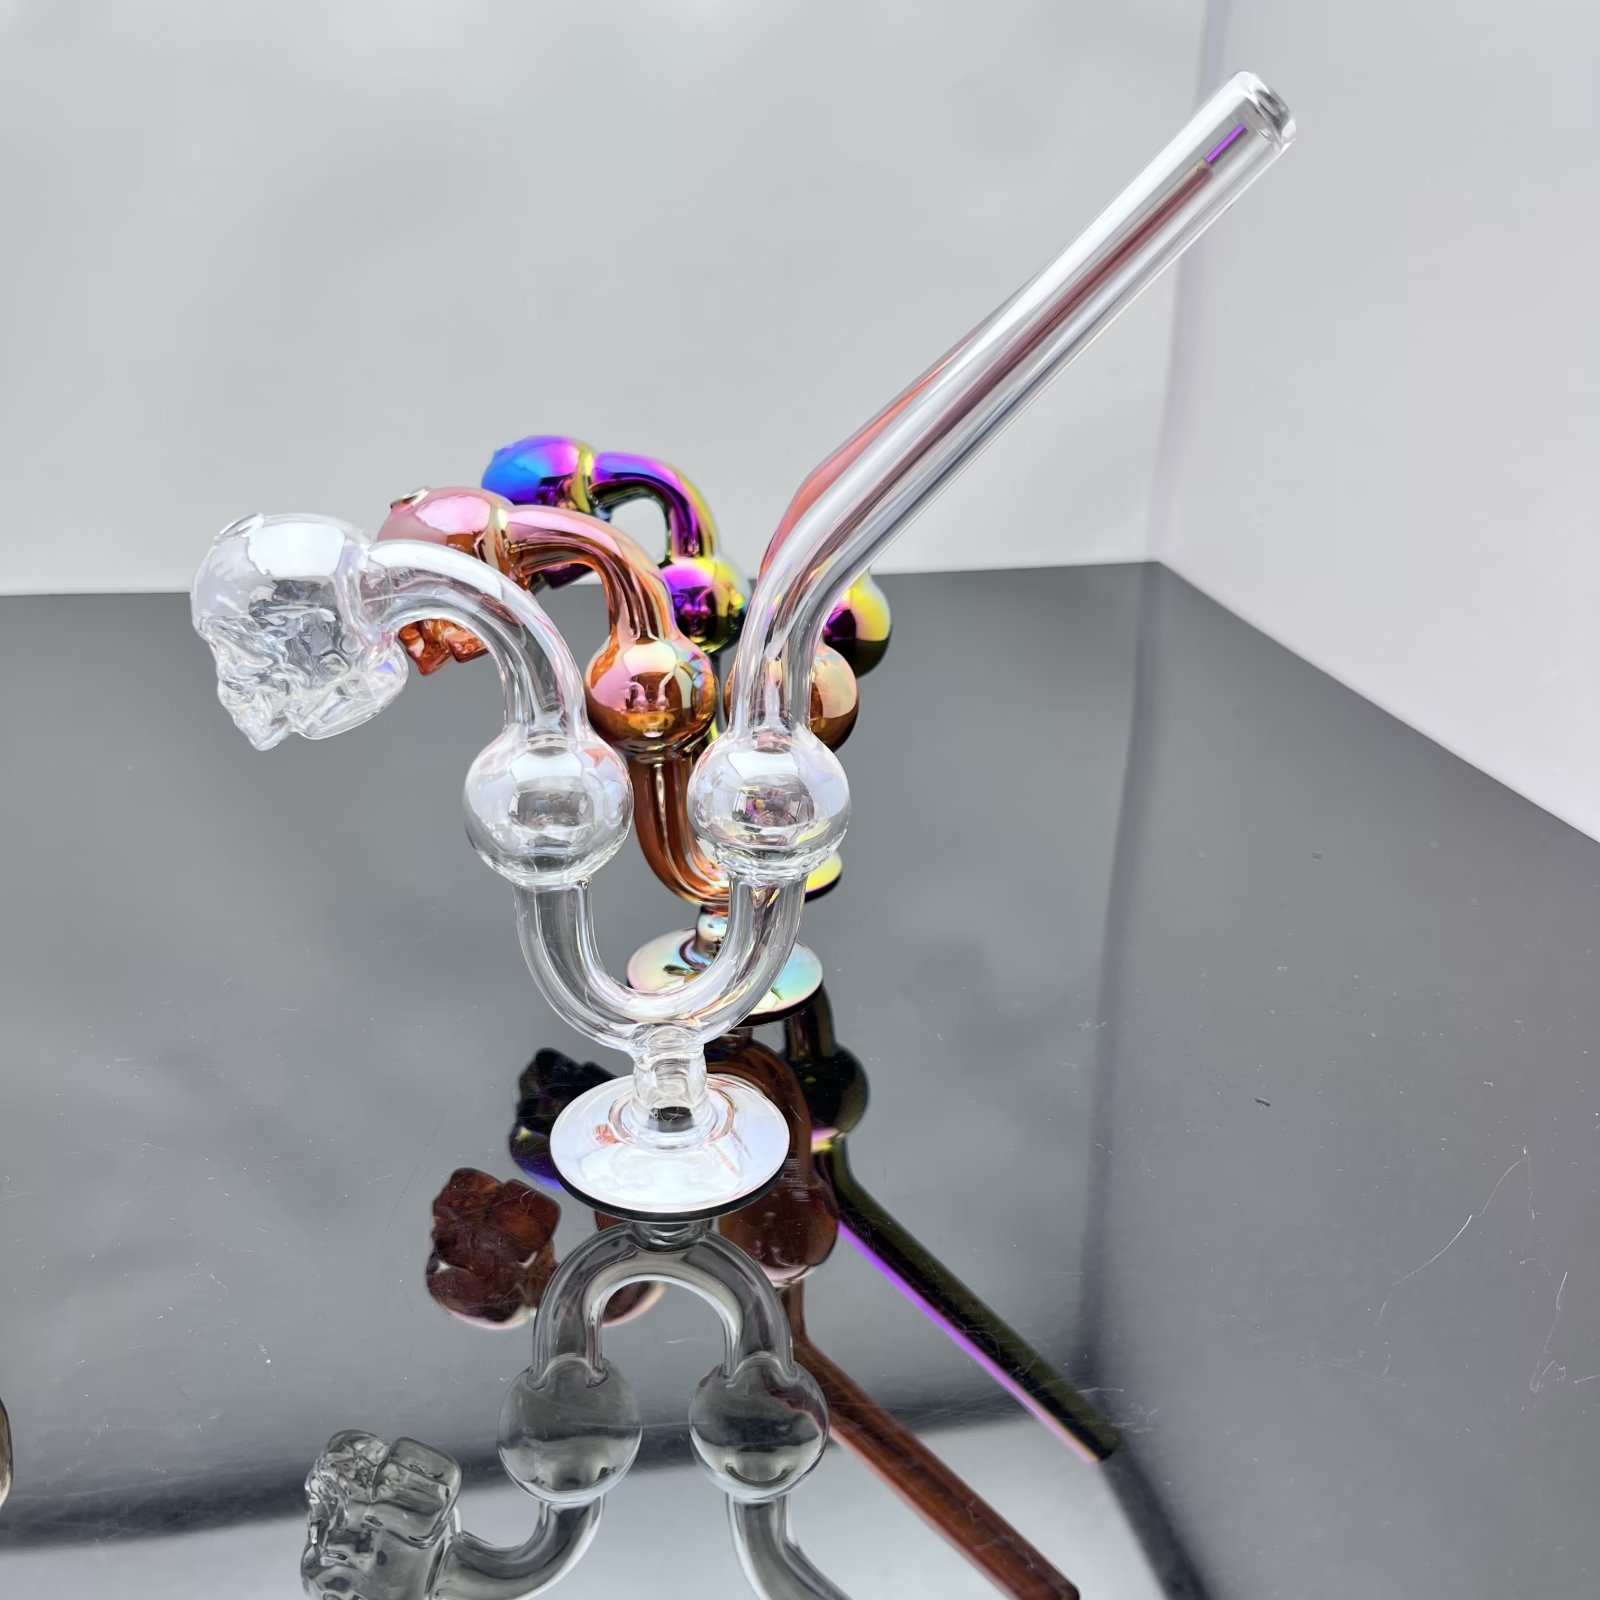 Glaspfeife Ölbrenner Bong Wasserpfeife Rauchen Neues farbbeschichtetes Skelettglas-Räucherset mit Sockel